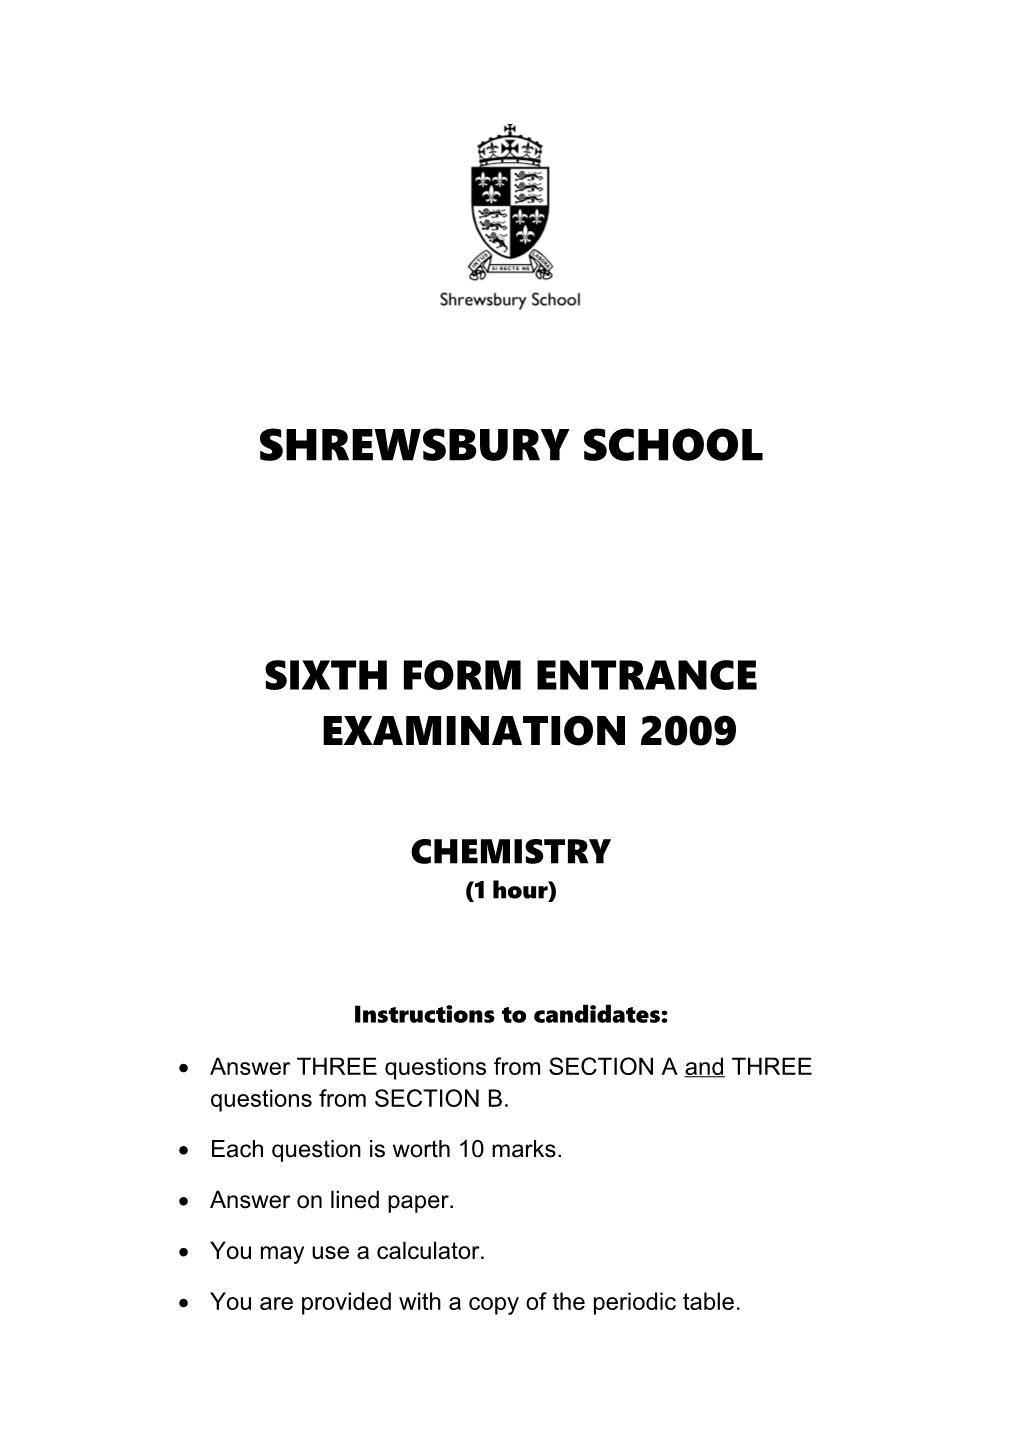 Sixth Form Entrance Examination 2009